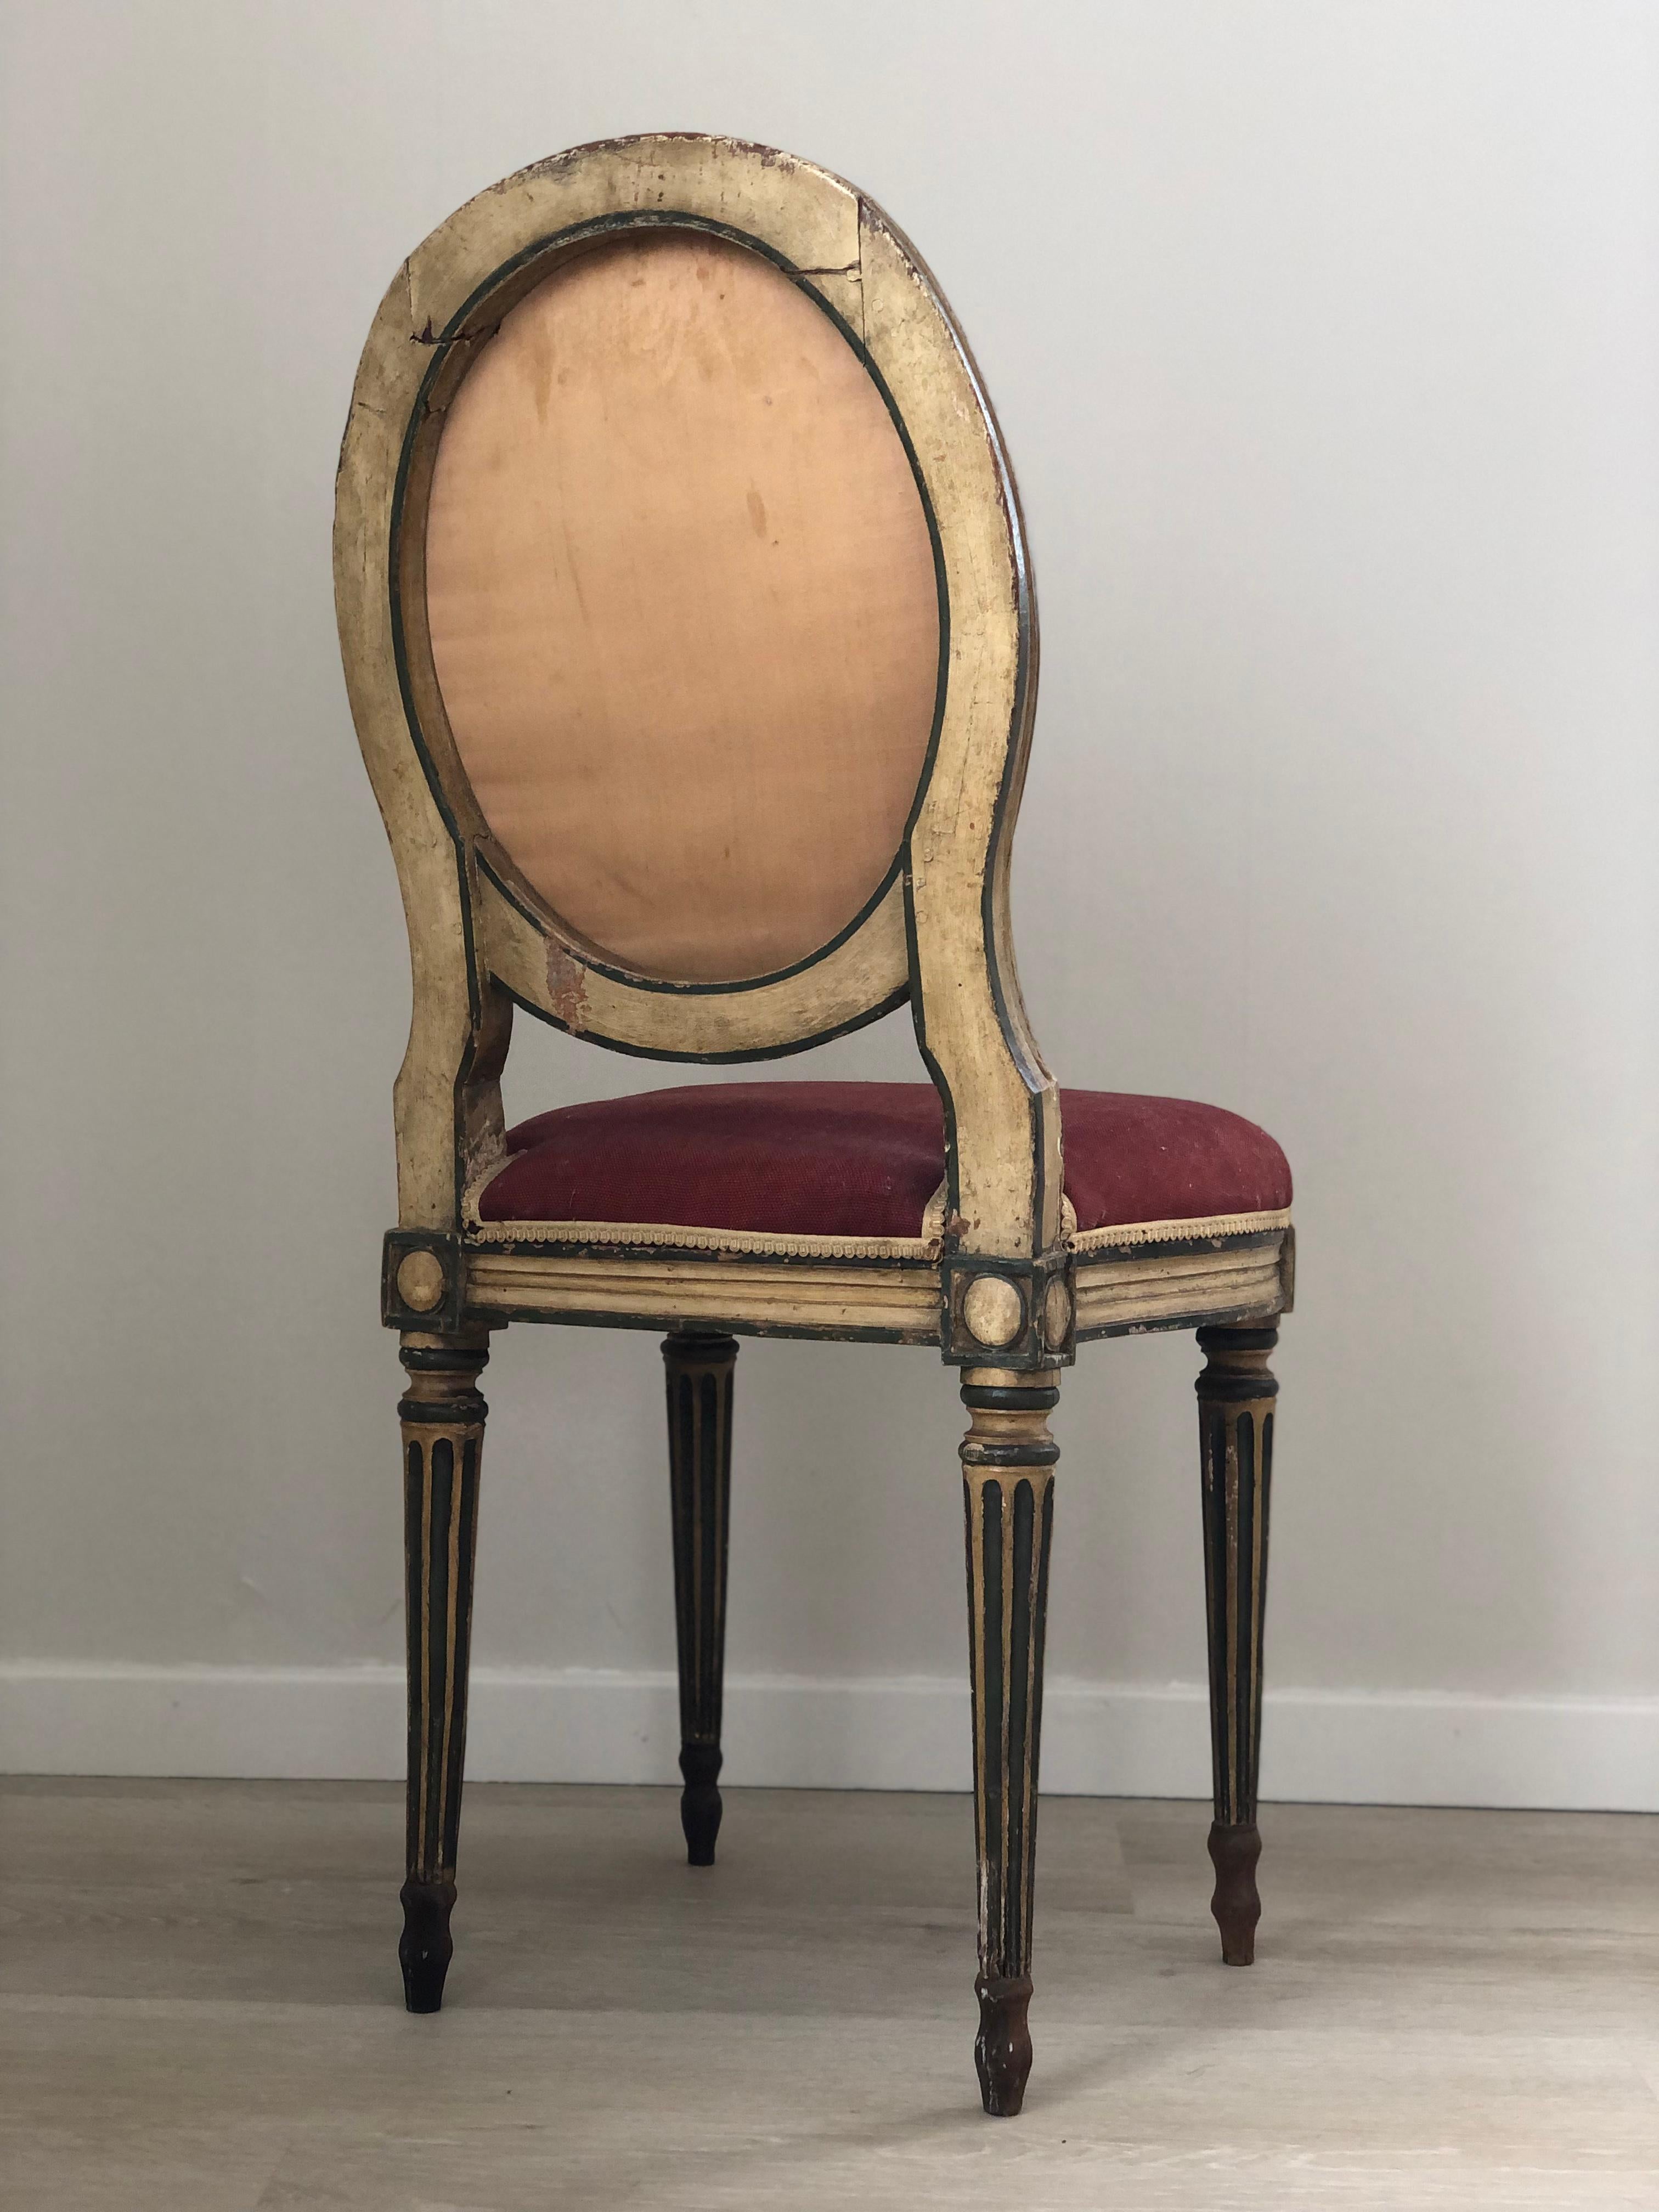 Chaise médaillon Louis Seize richement sculptée et recouverte d'un tissu rouge robuste. La chaise en bois doré a des accents verts. En état d'origine, fin du 19e siècle, en provenance de France.

Objet : Président
Designer : Inconnu
Style : Antique,